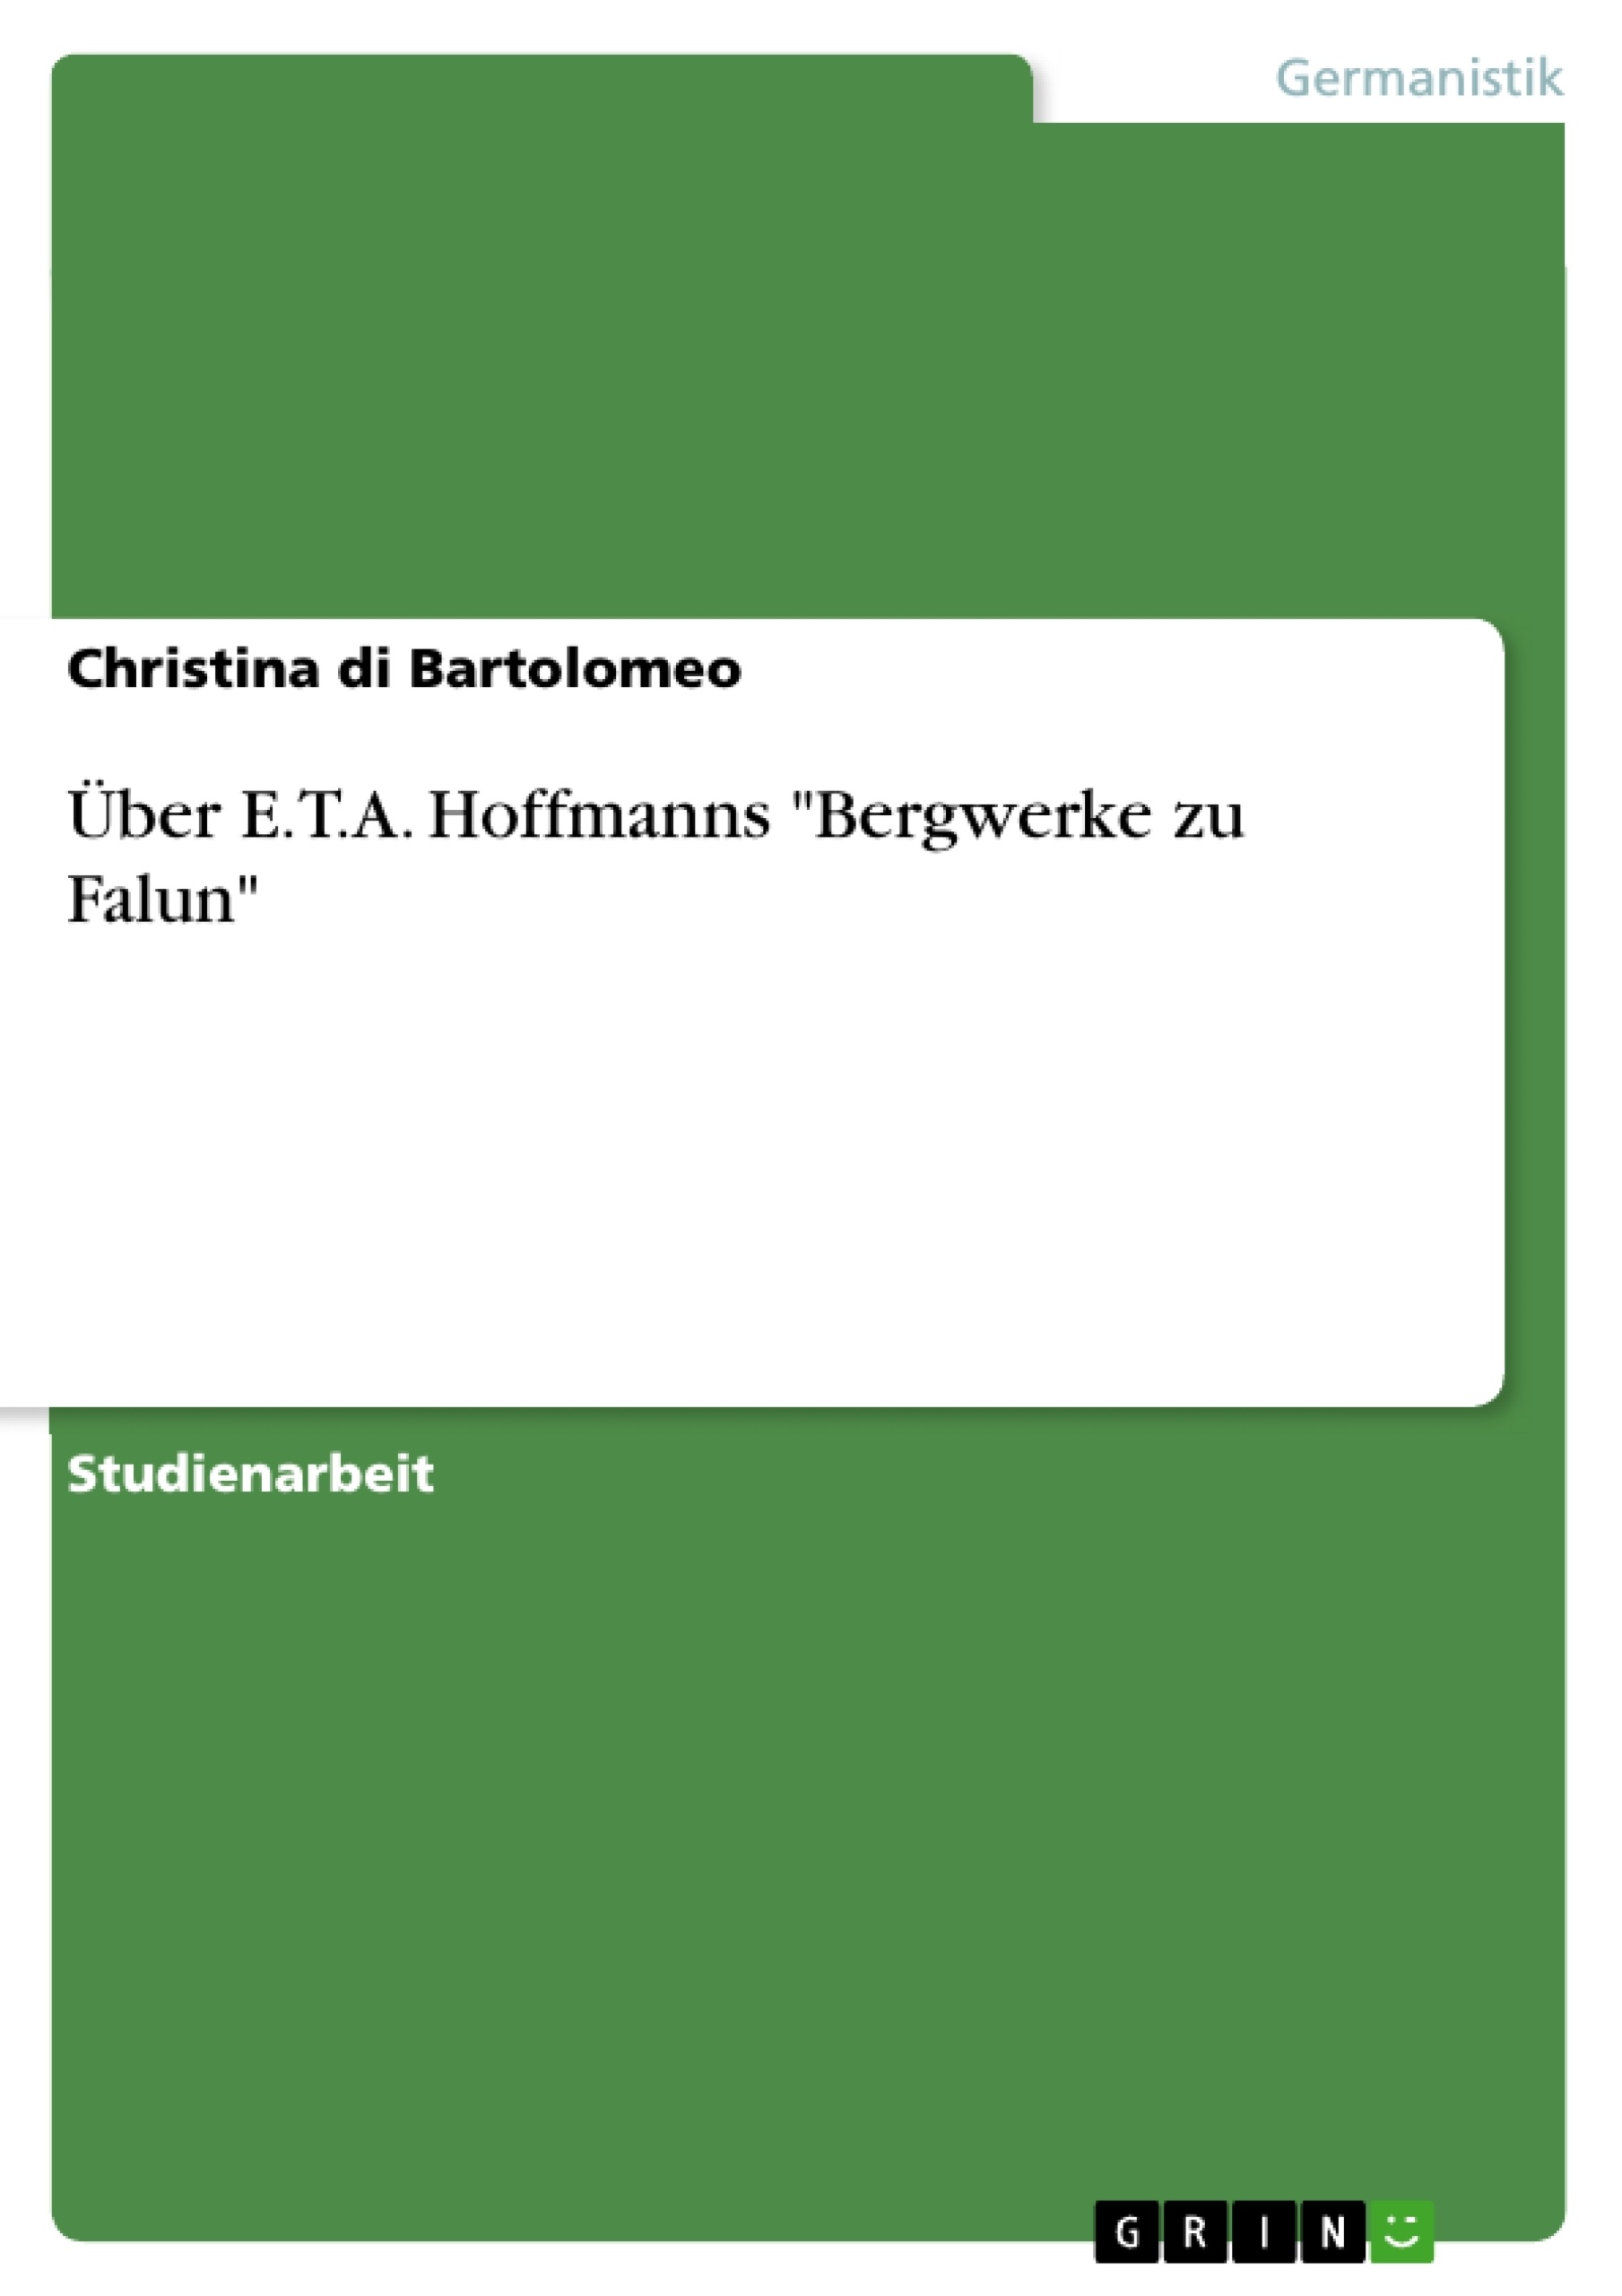 Title: Über E.T.A. Hoffmanns "Bergwerke zu Falun"